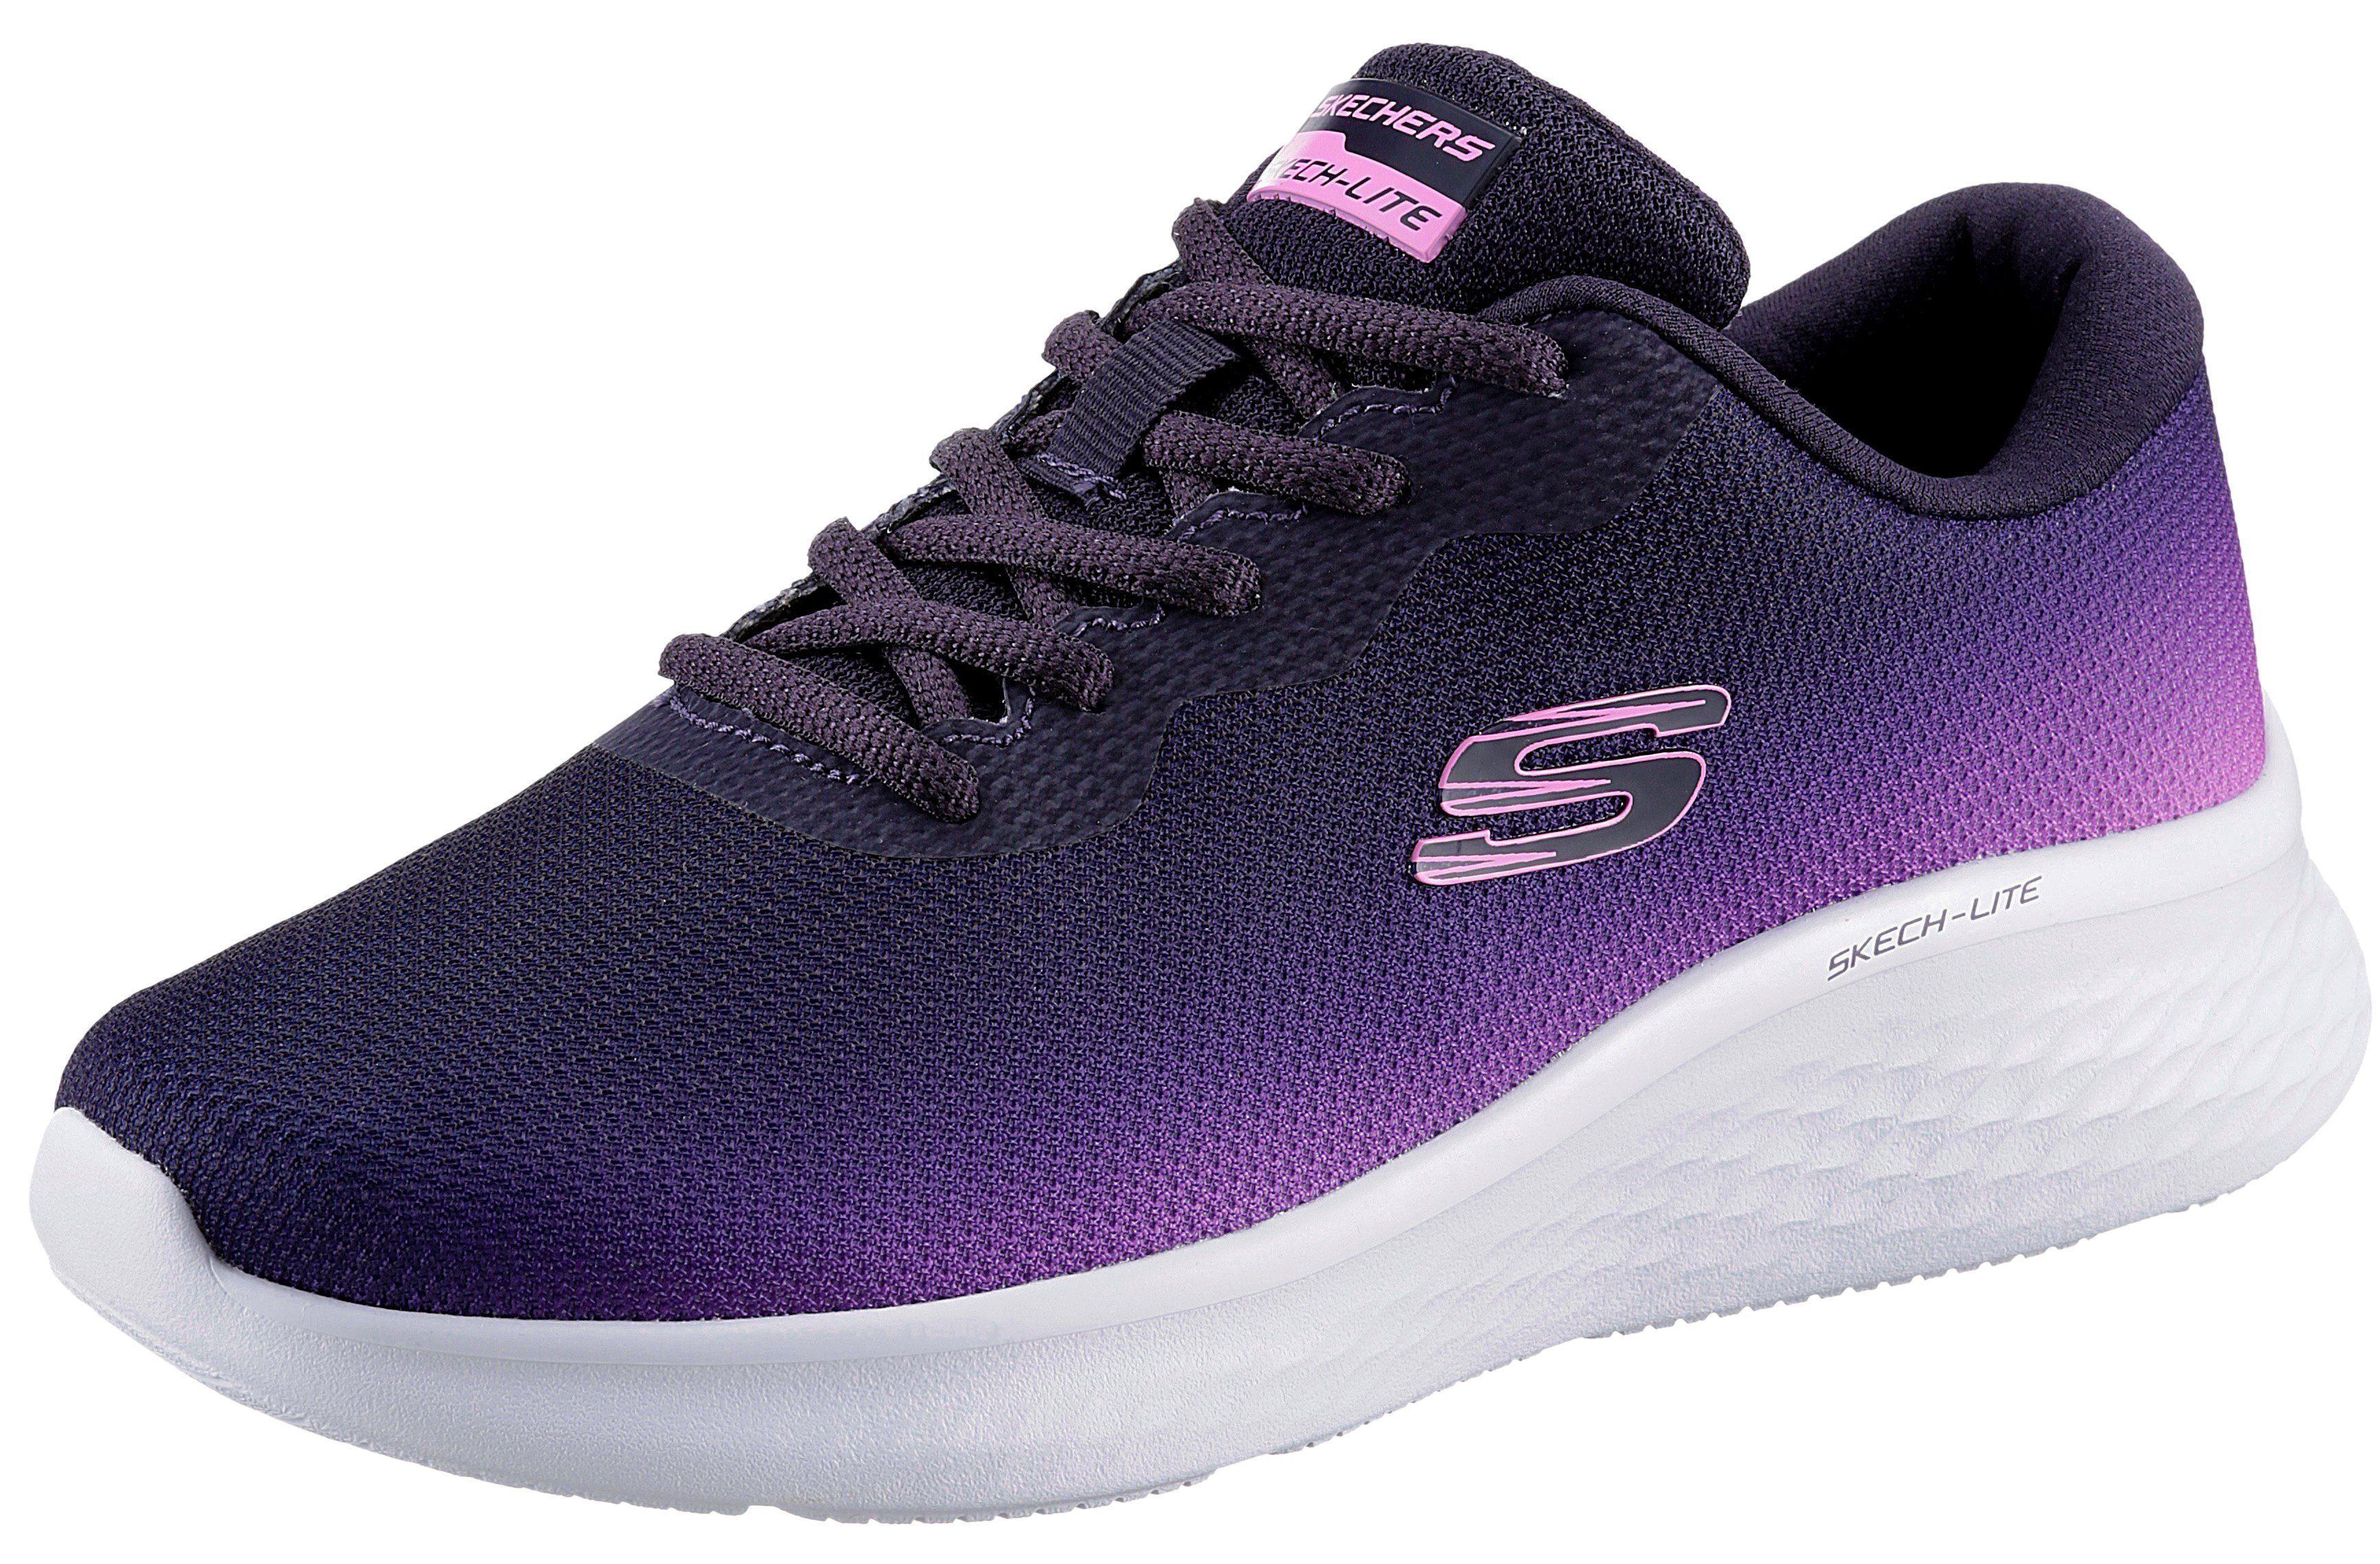 Skechers SKECH-LITE PRO FADE OUT Sneaker mit trendigen Farbverlauf | Sneaker low